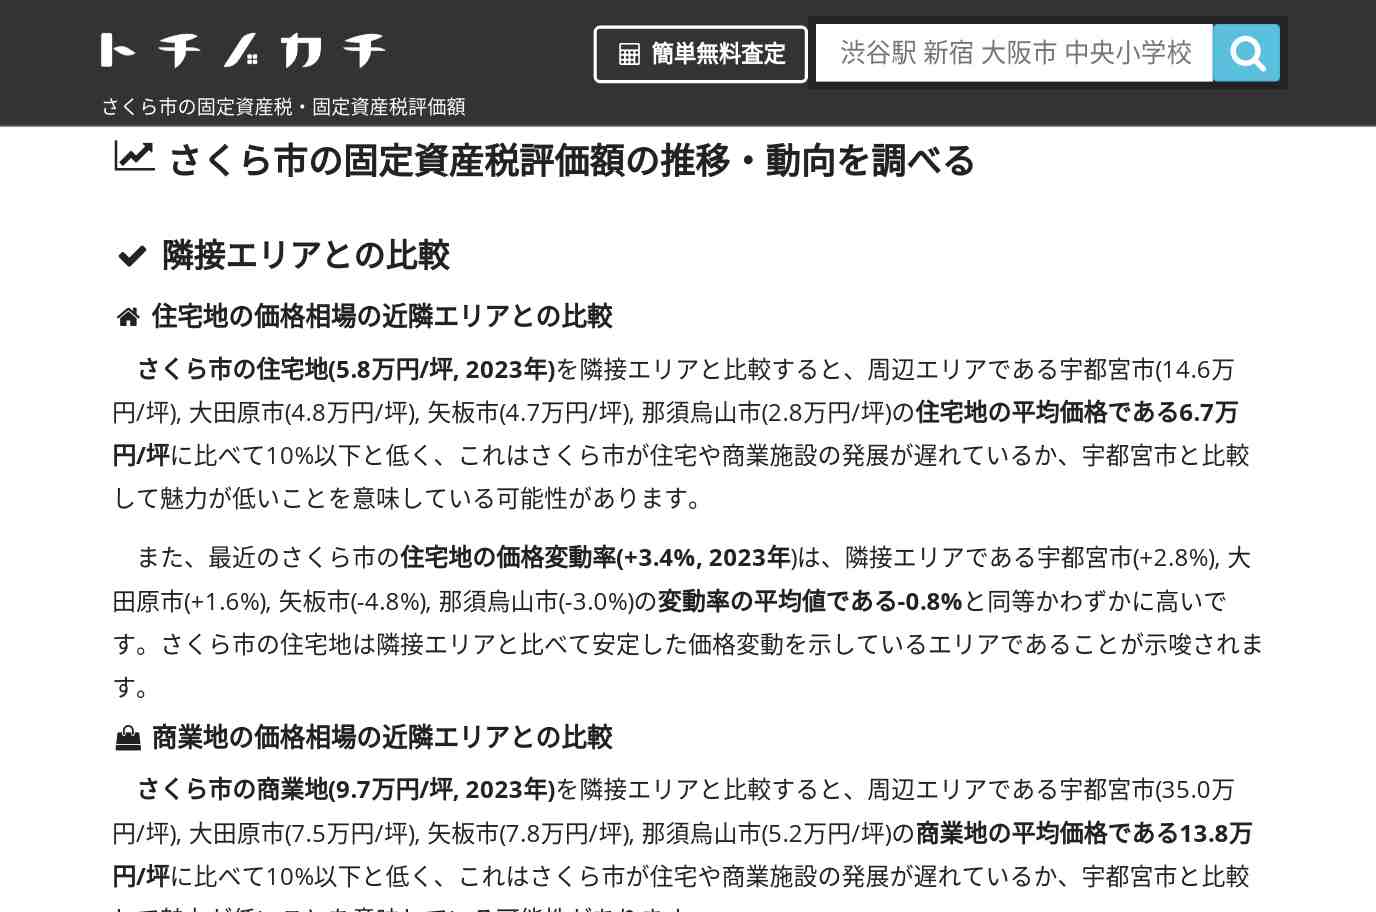 押上小学校(栃木県 さくら市)周辺の固定資産税・固定資産税評価額 | トチノカチ